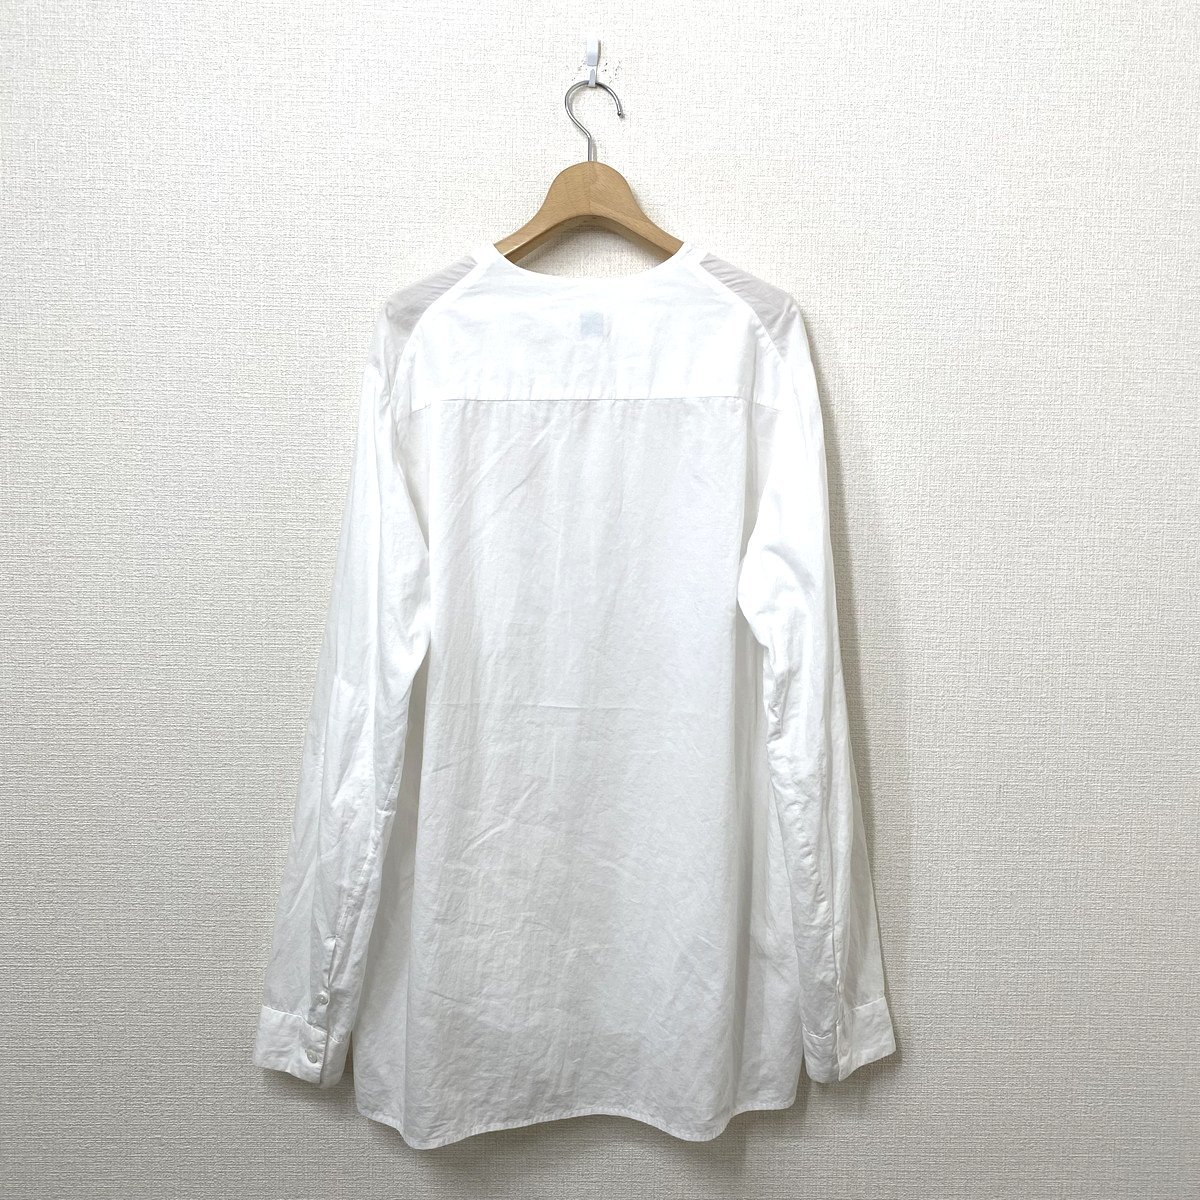 SUNSEA サンシー Exploration Shirt ノーカラーシャツ 3 ホワイト 白 長袖シャツ_画像2